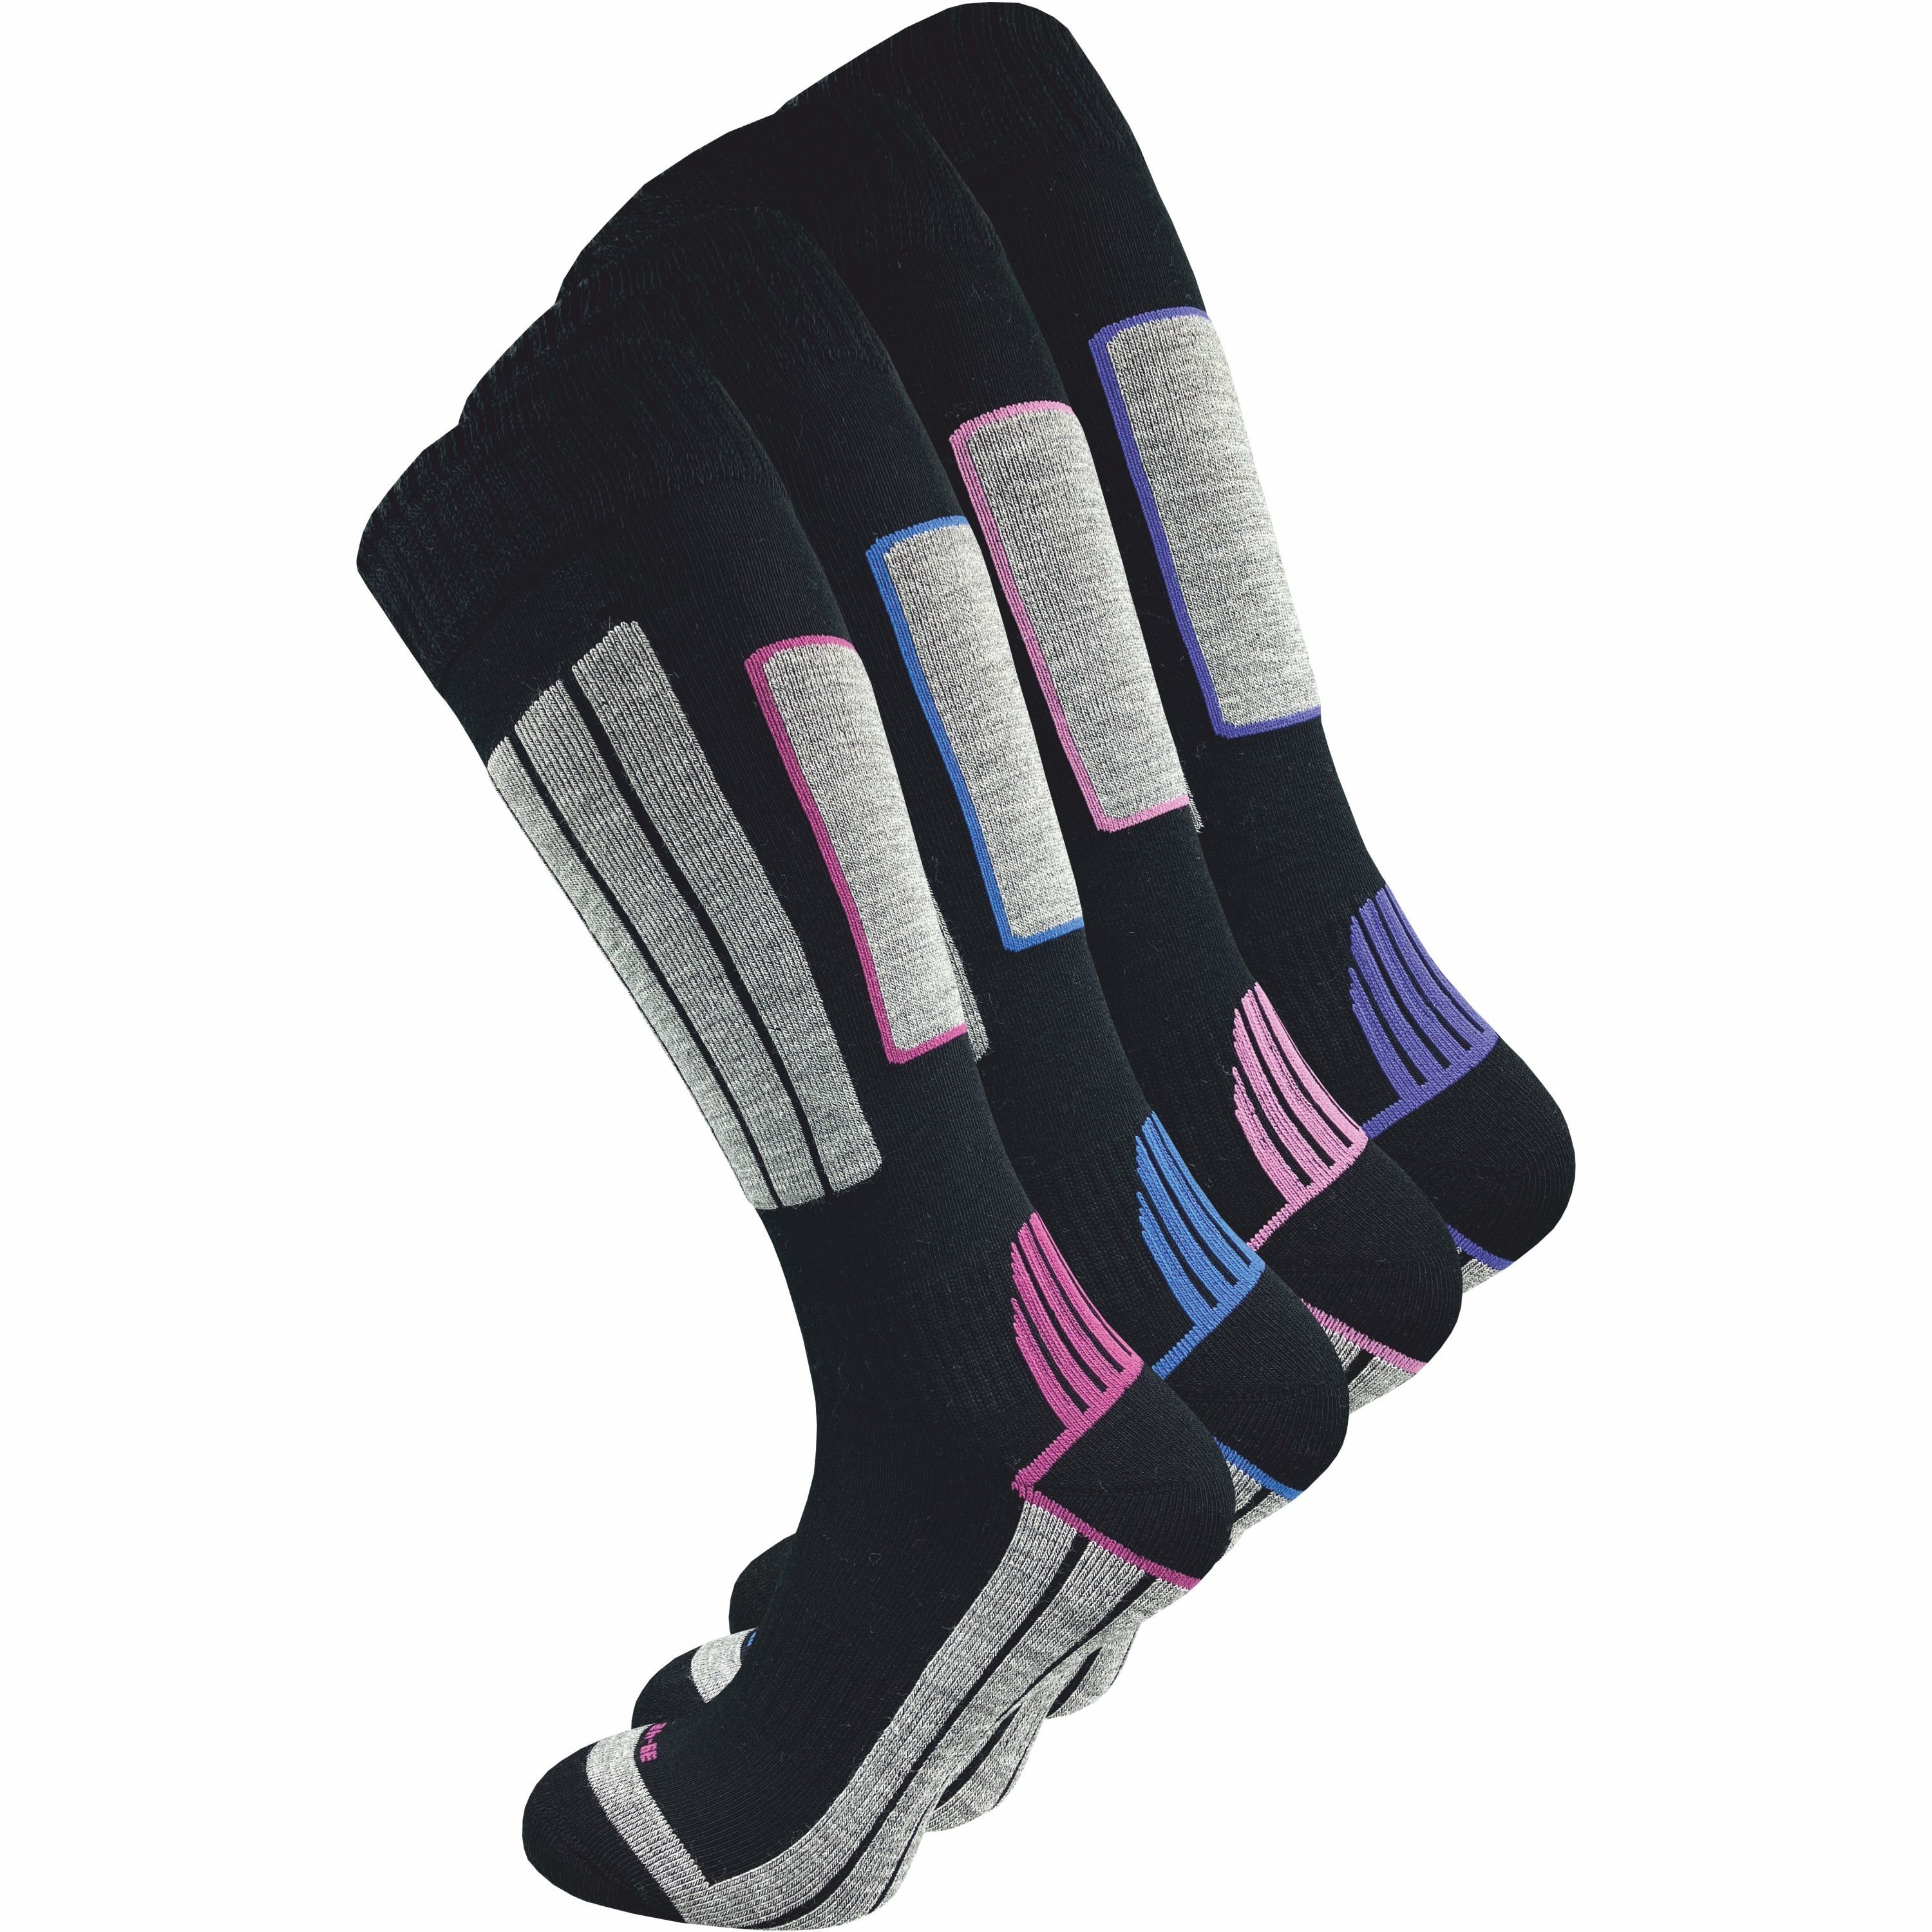 GAWILO Skisocken für Damen mit wärmender Wolle und spezieller Funktionspolsterung (4 Paar) Spezielle Konstruktion sorgt für Stabilität & hält Füße warm & trocken schwarz+